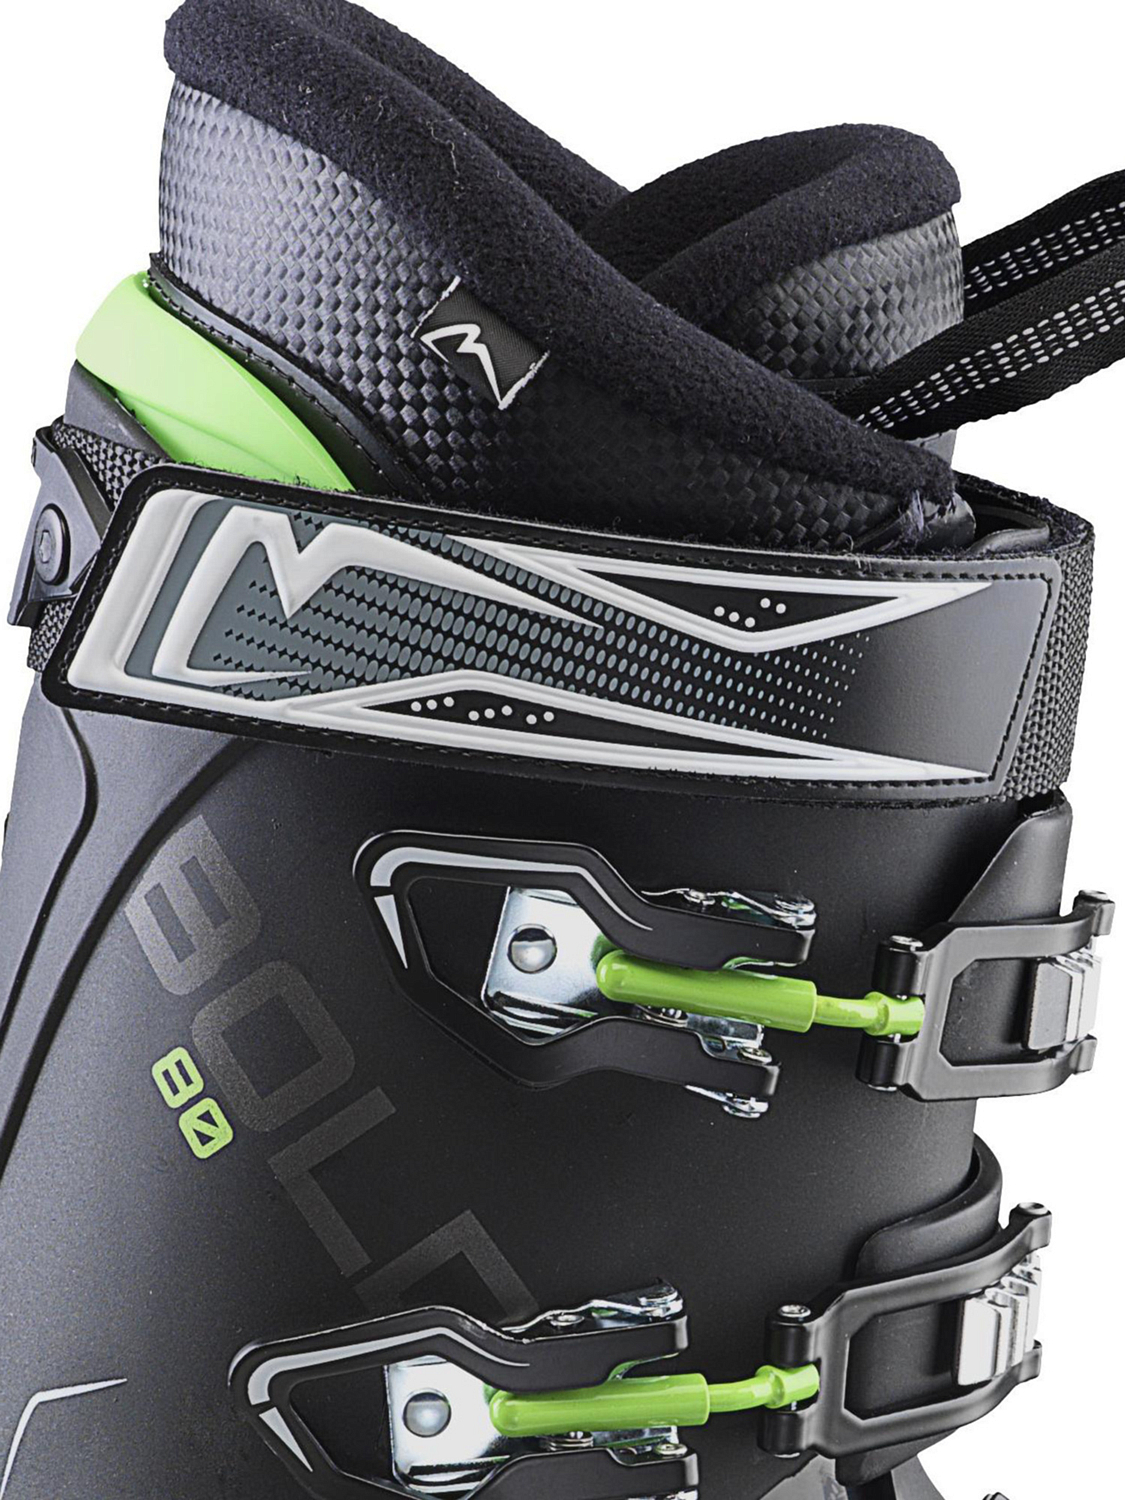 Горнолыжные ботинки ROXA BOLD 80 Black/black/green